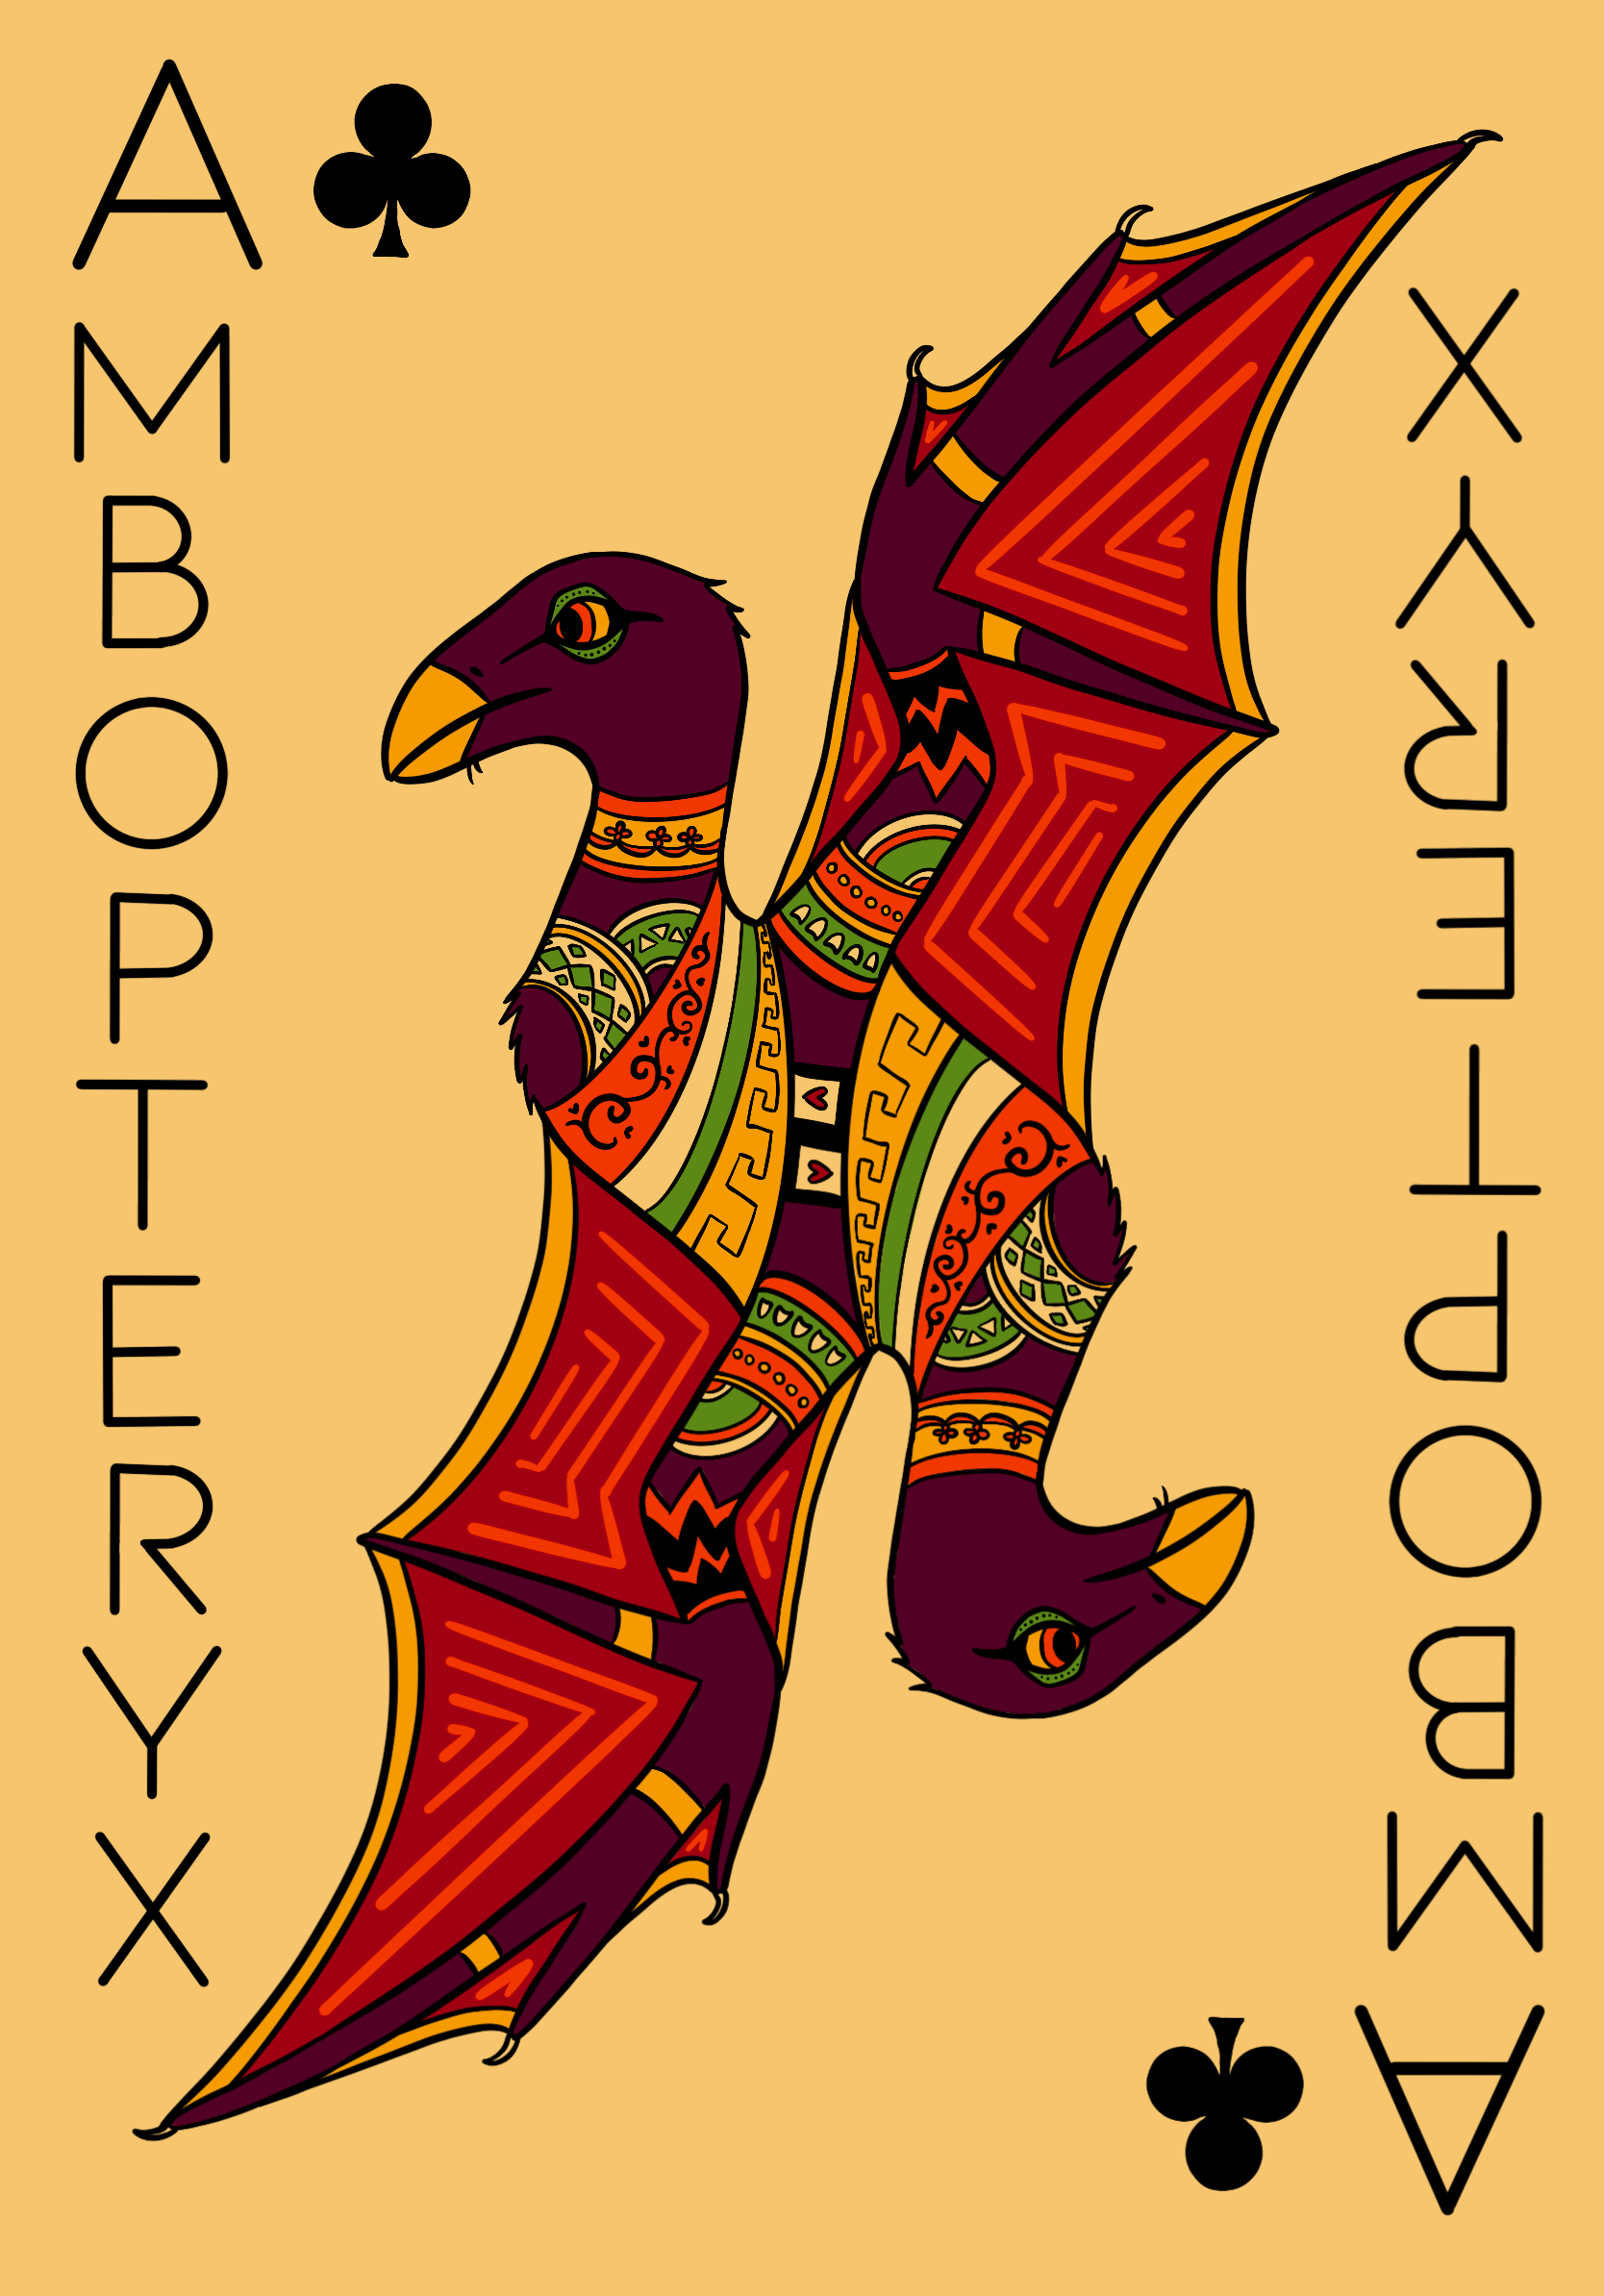 Ambopteryx